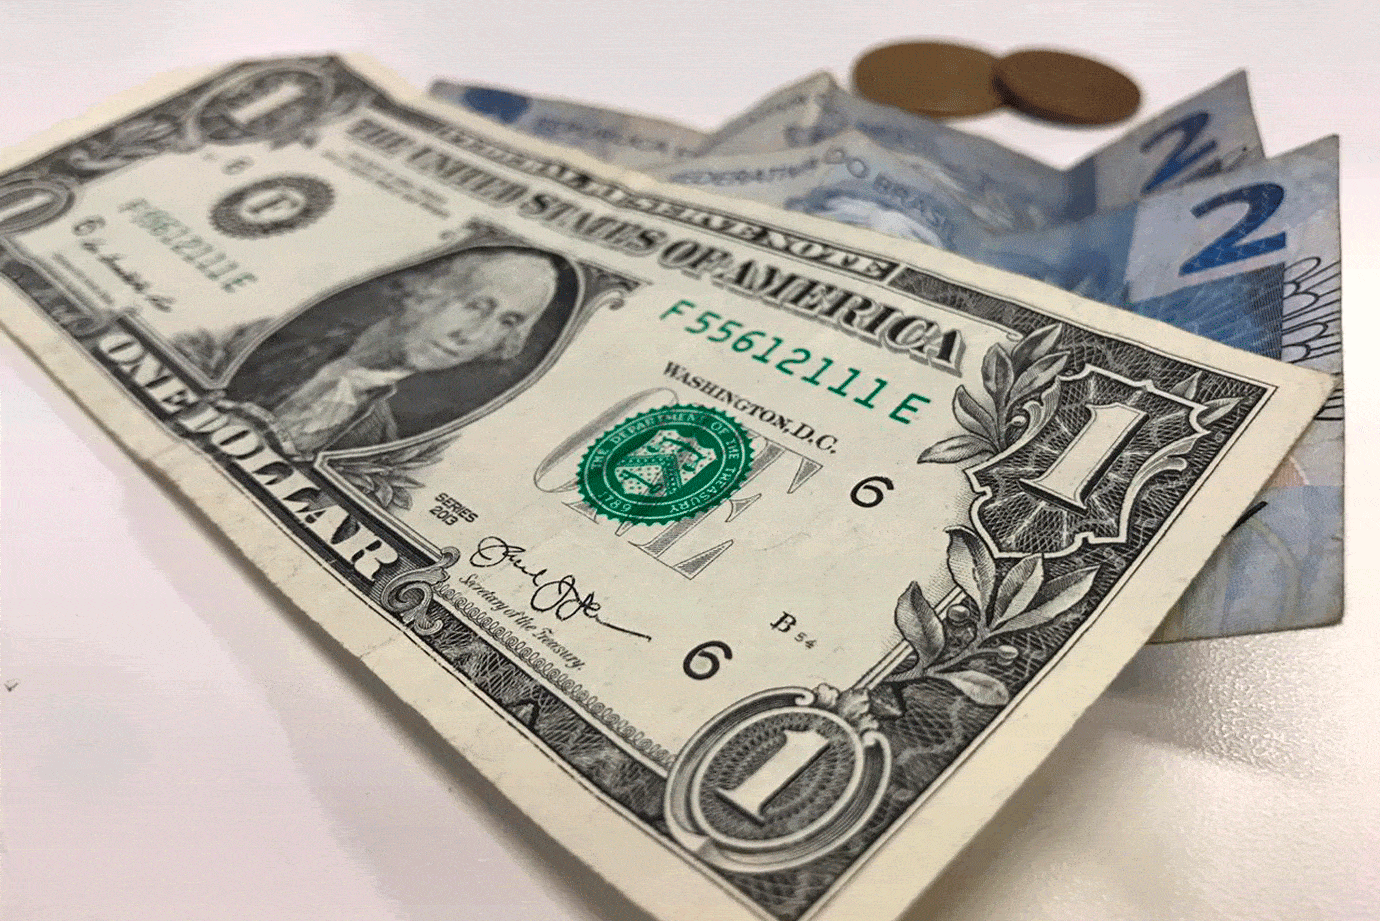 Alta do dólar, o que isso pode acarretar no nosso dia-a-dia?